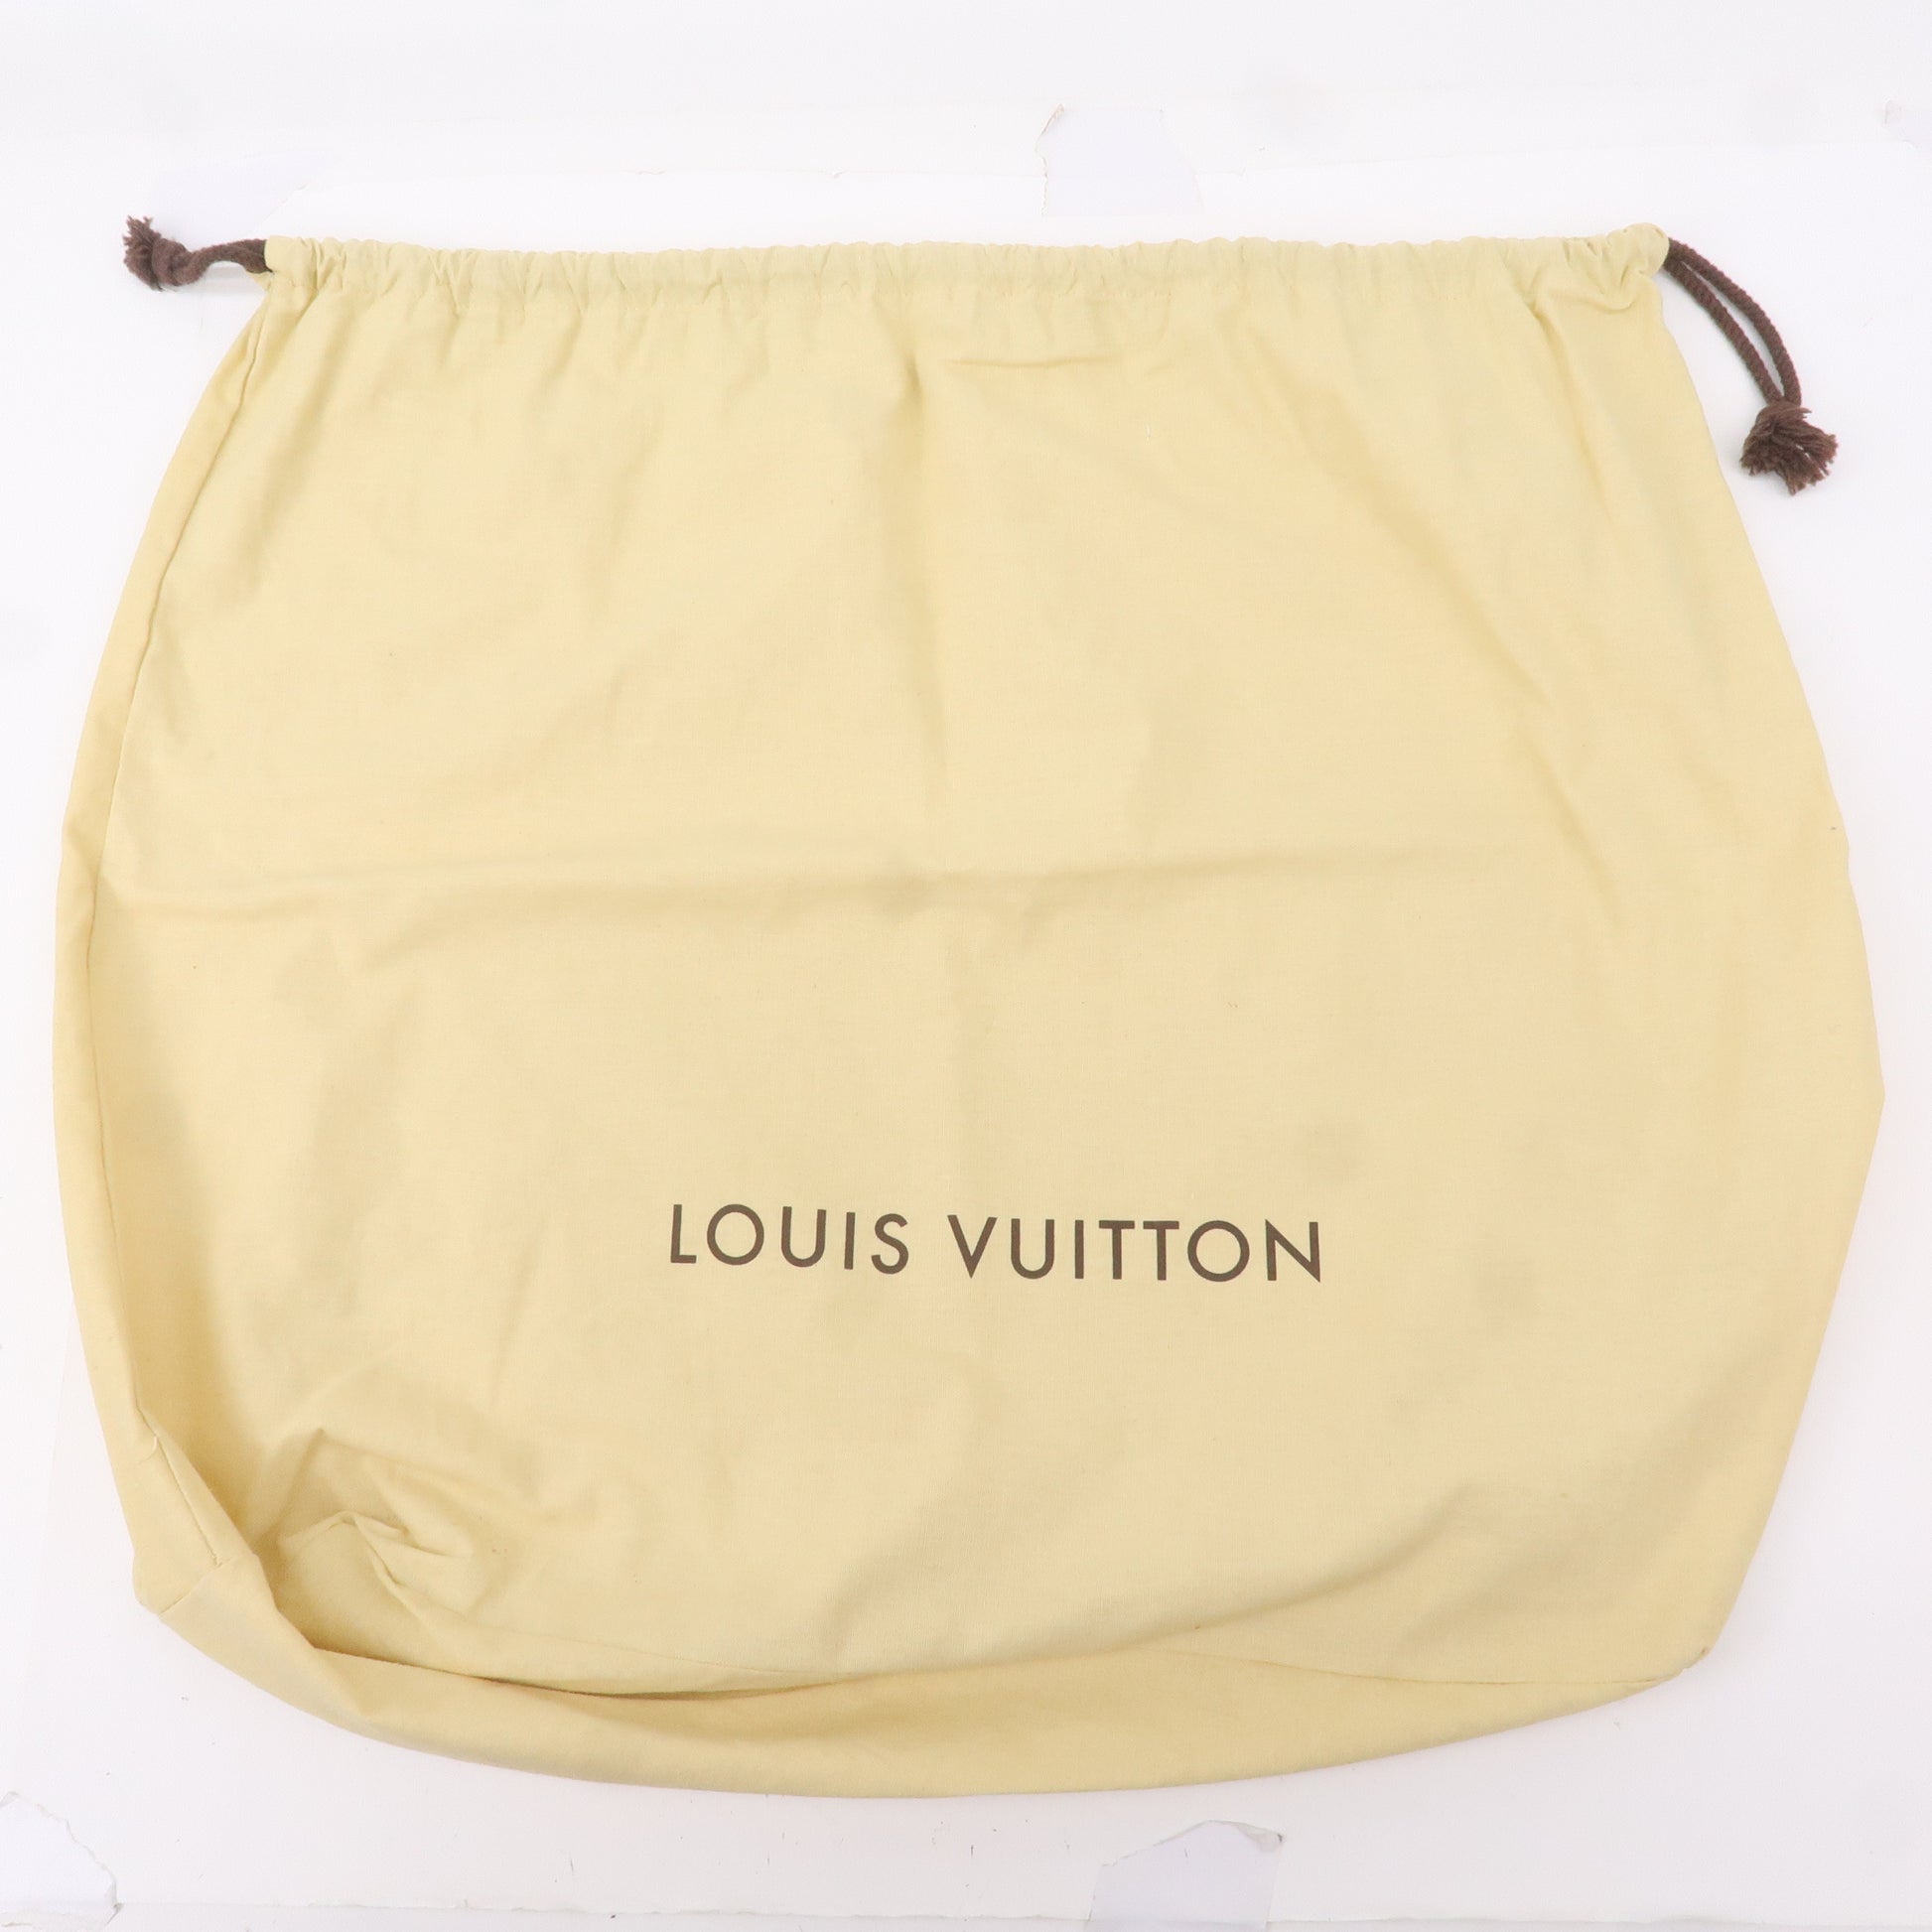 Louis Vuitton, Other, Sold Authentic Louis Vuitton Purse Dust Bag